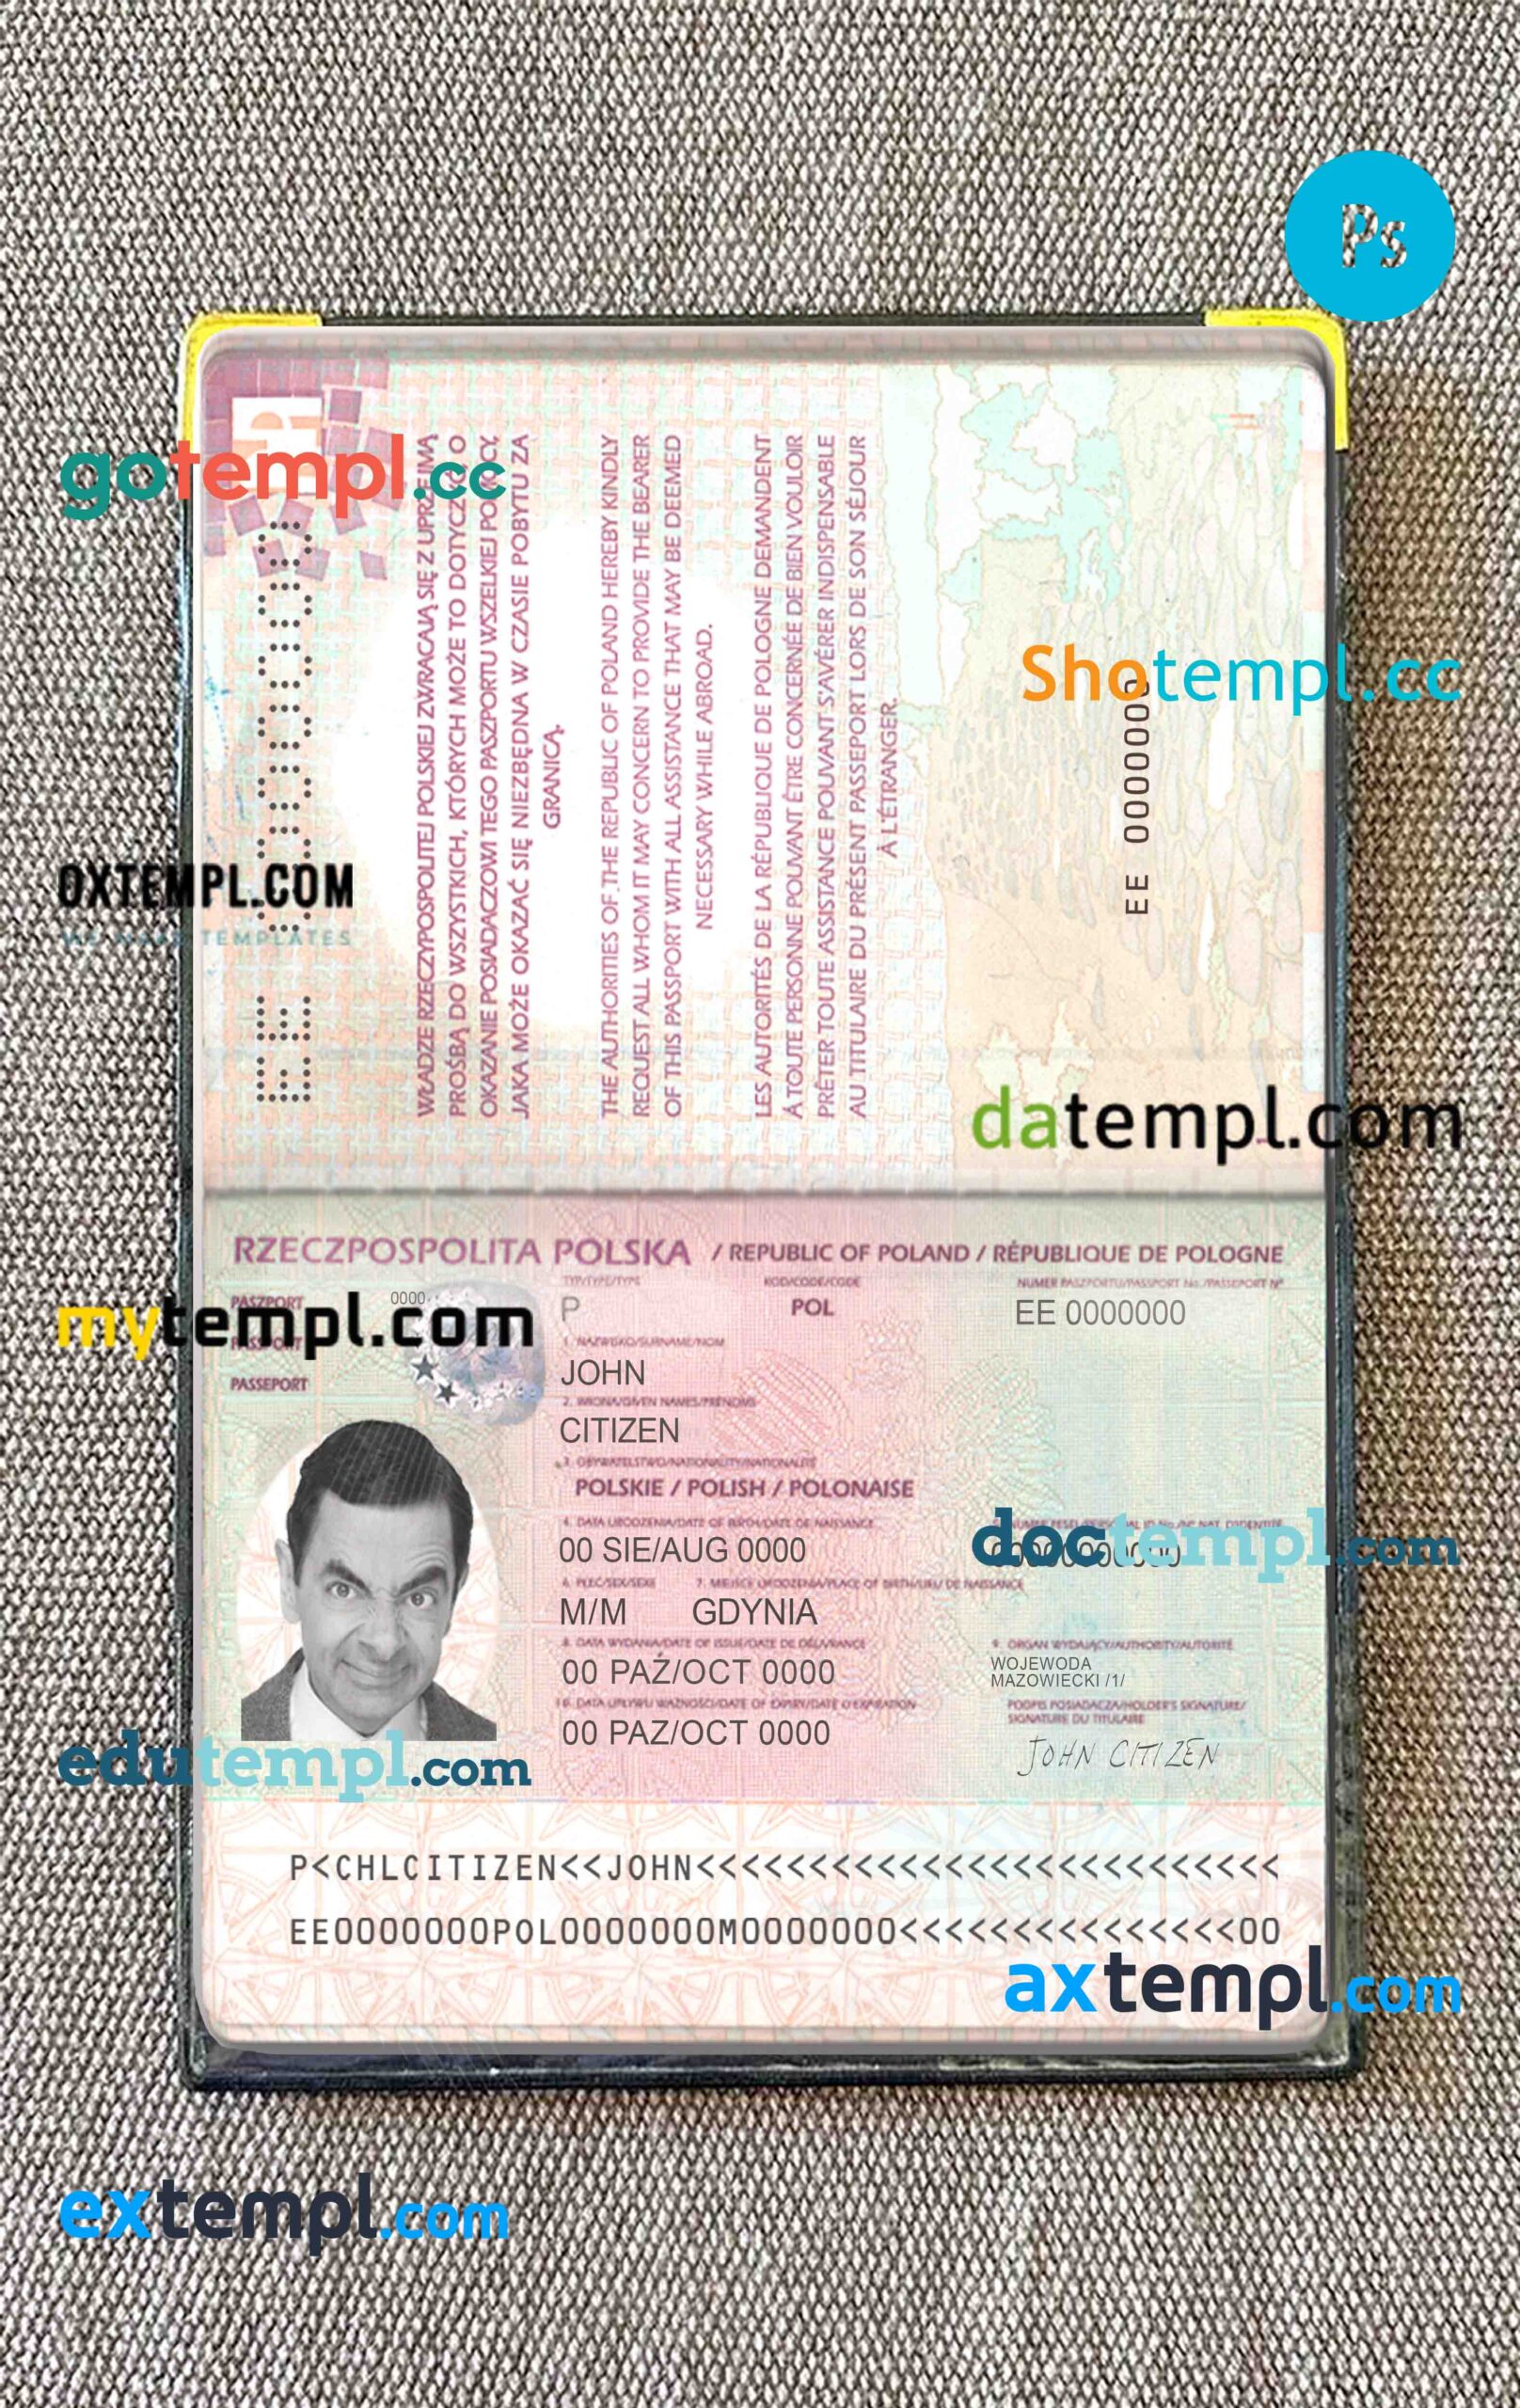 Bosnia and Herzegovina cat (animal, pet) passport PSD template, fully editable